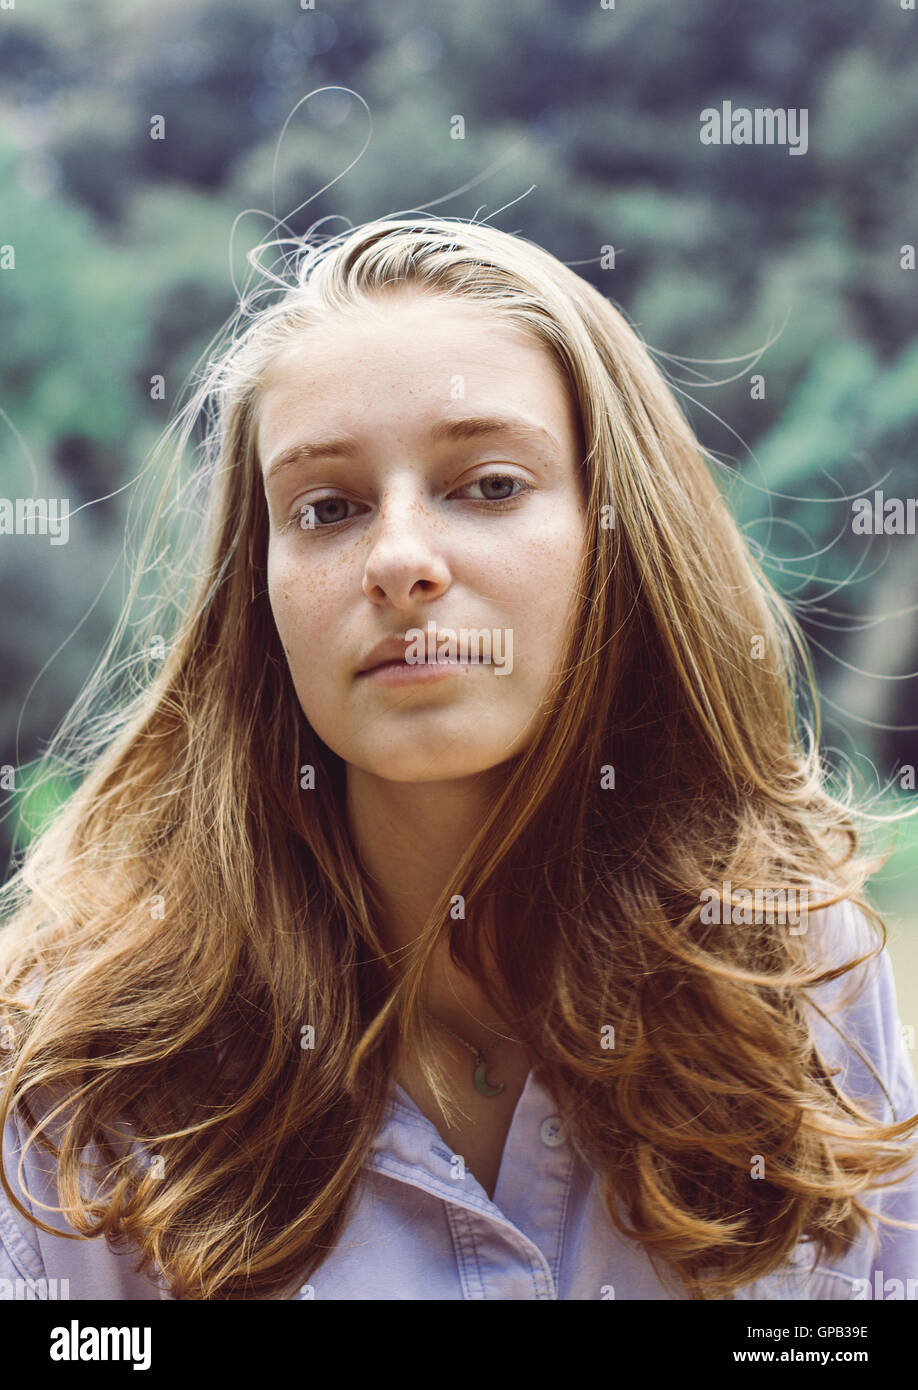 Bonito retrato de una adolescente con el pelo rubio, mirando pensativo Foto de stock